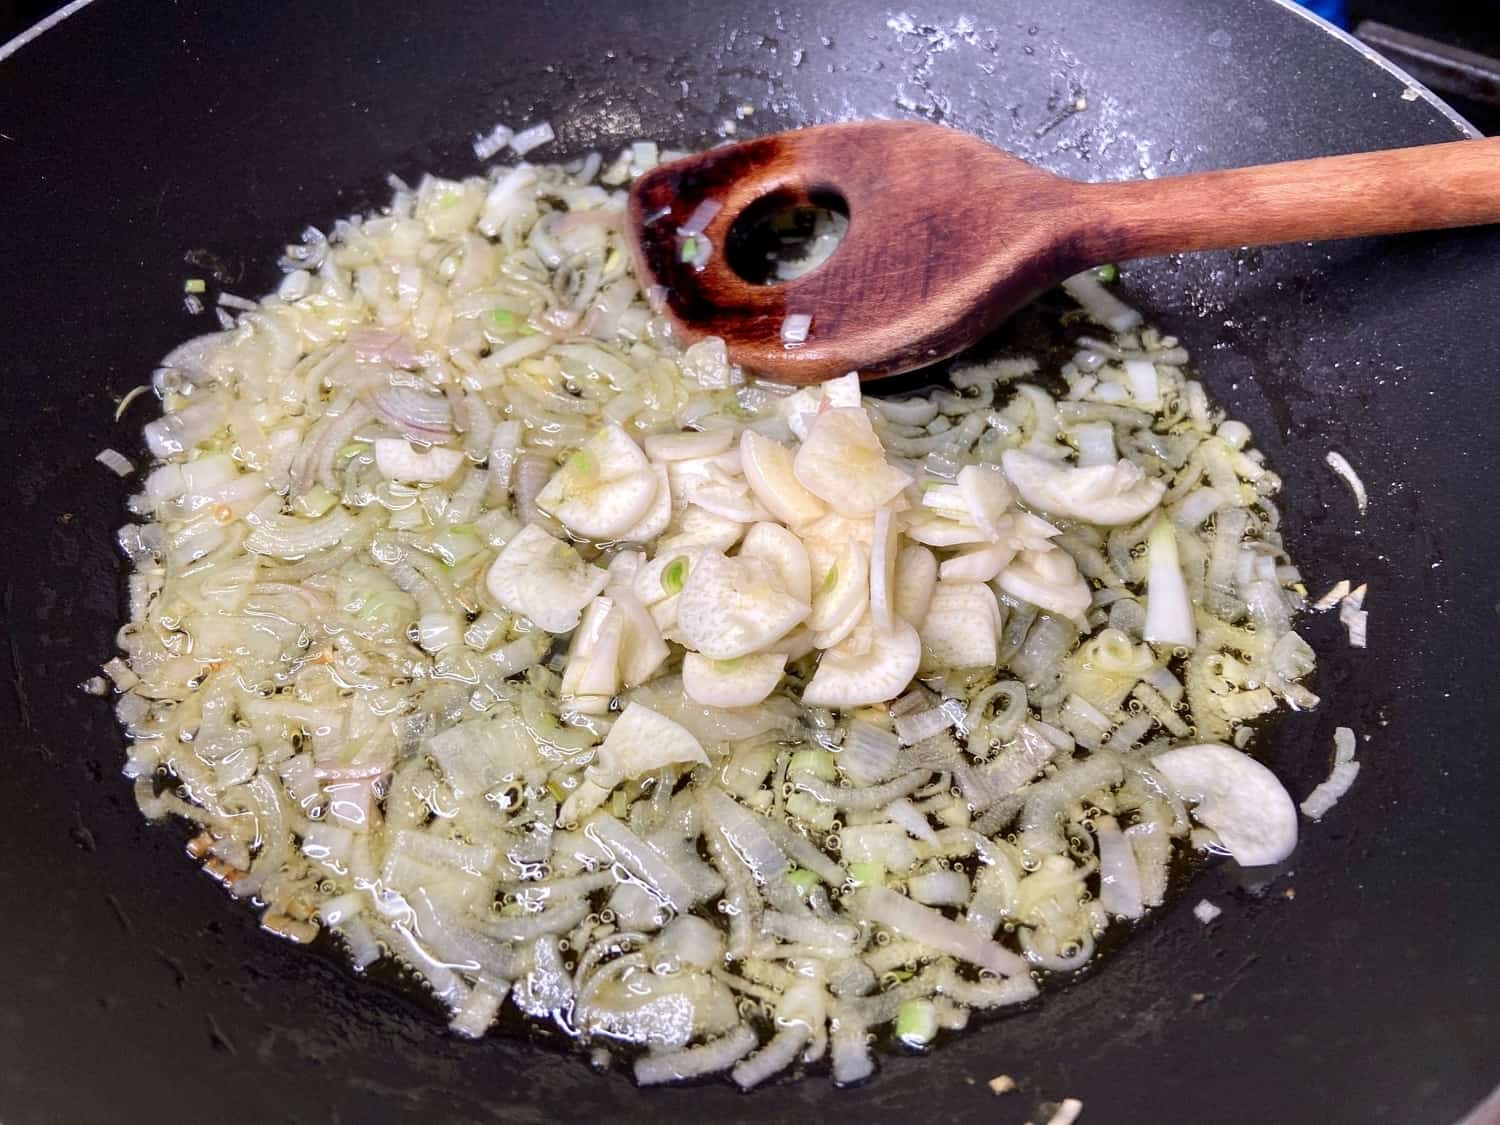 Sauteing garlic and shallots.